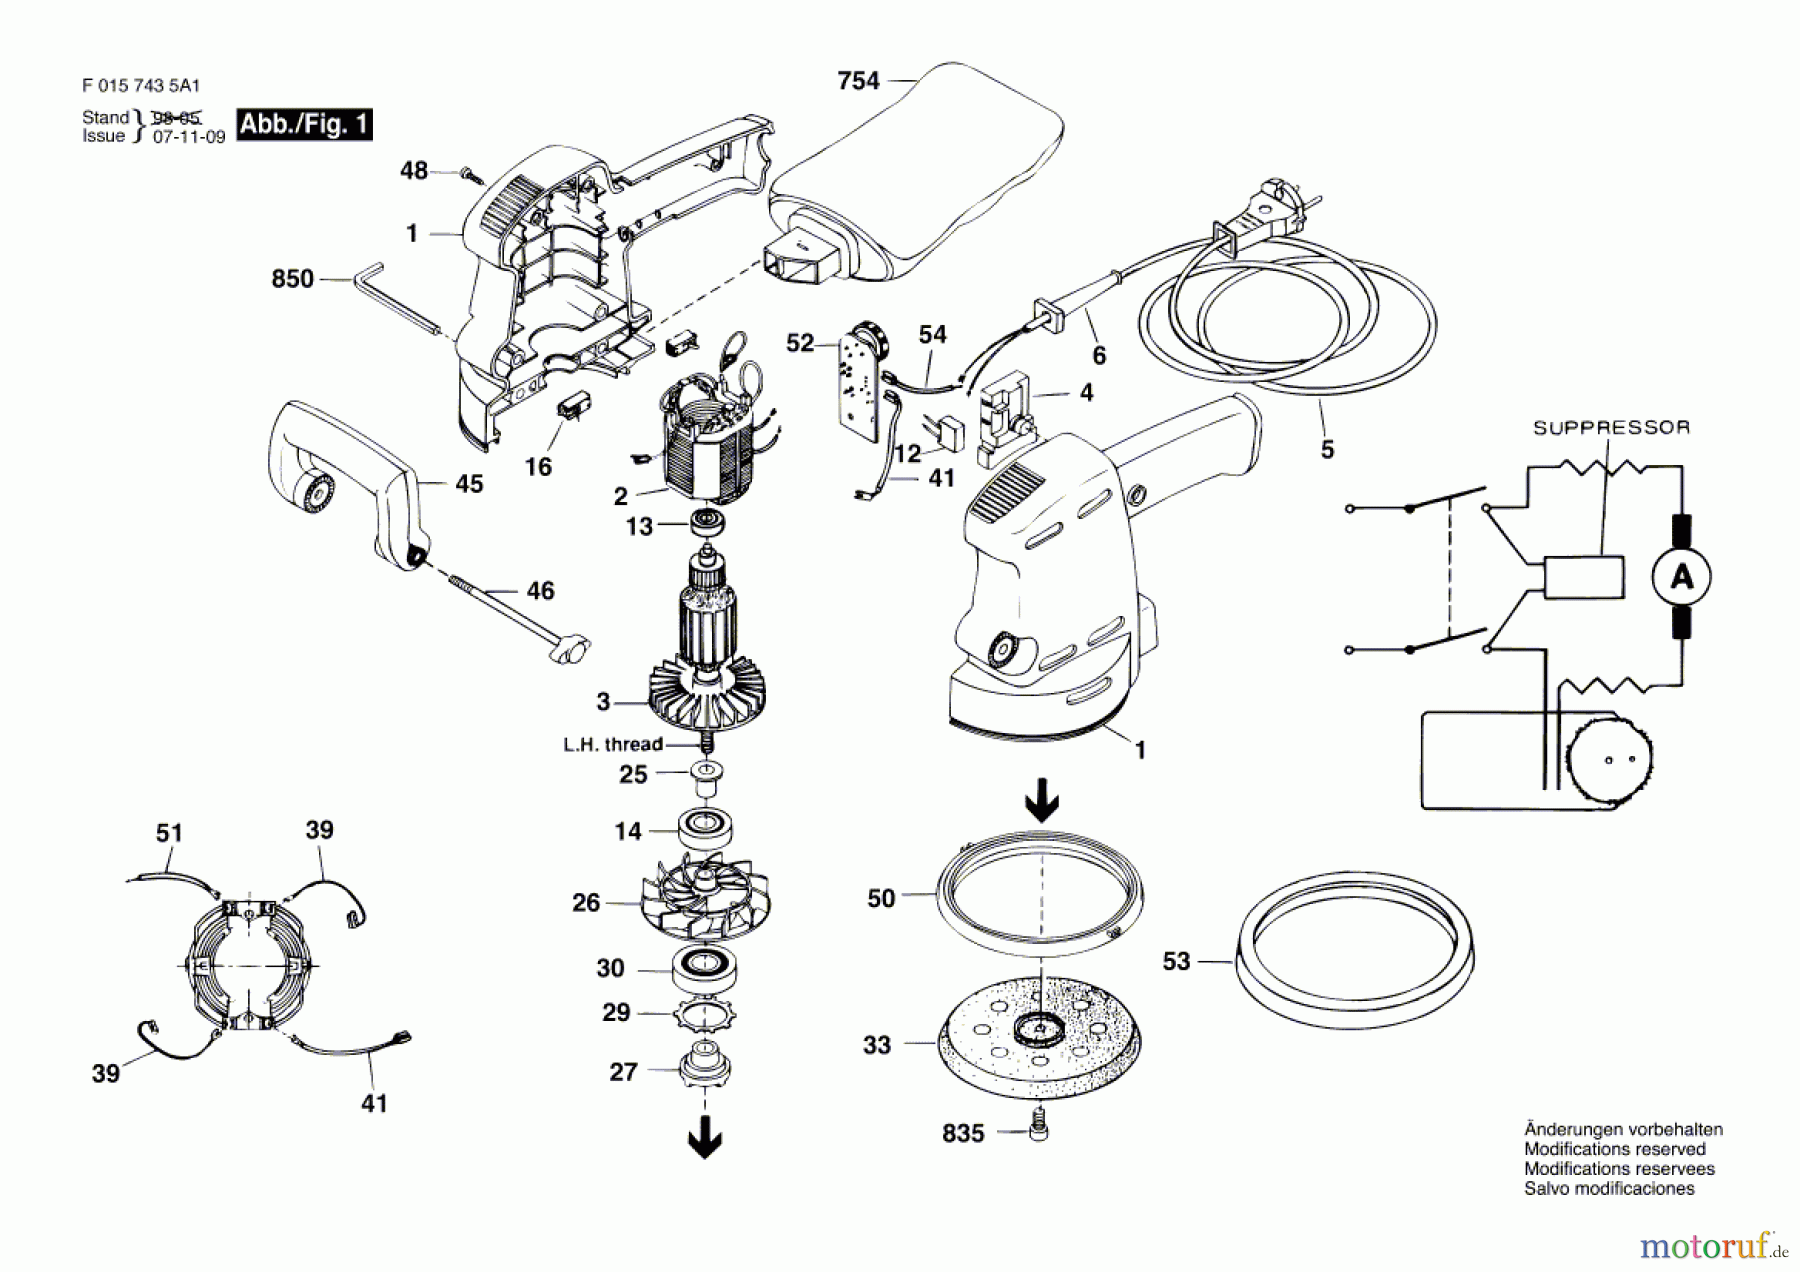  Bosch Werkzeug Exzenterschleifer 7435 H1 Seite 1